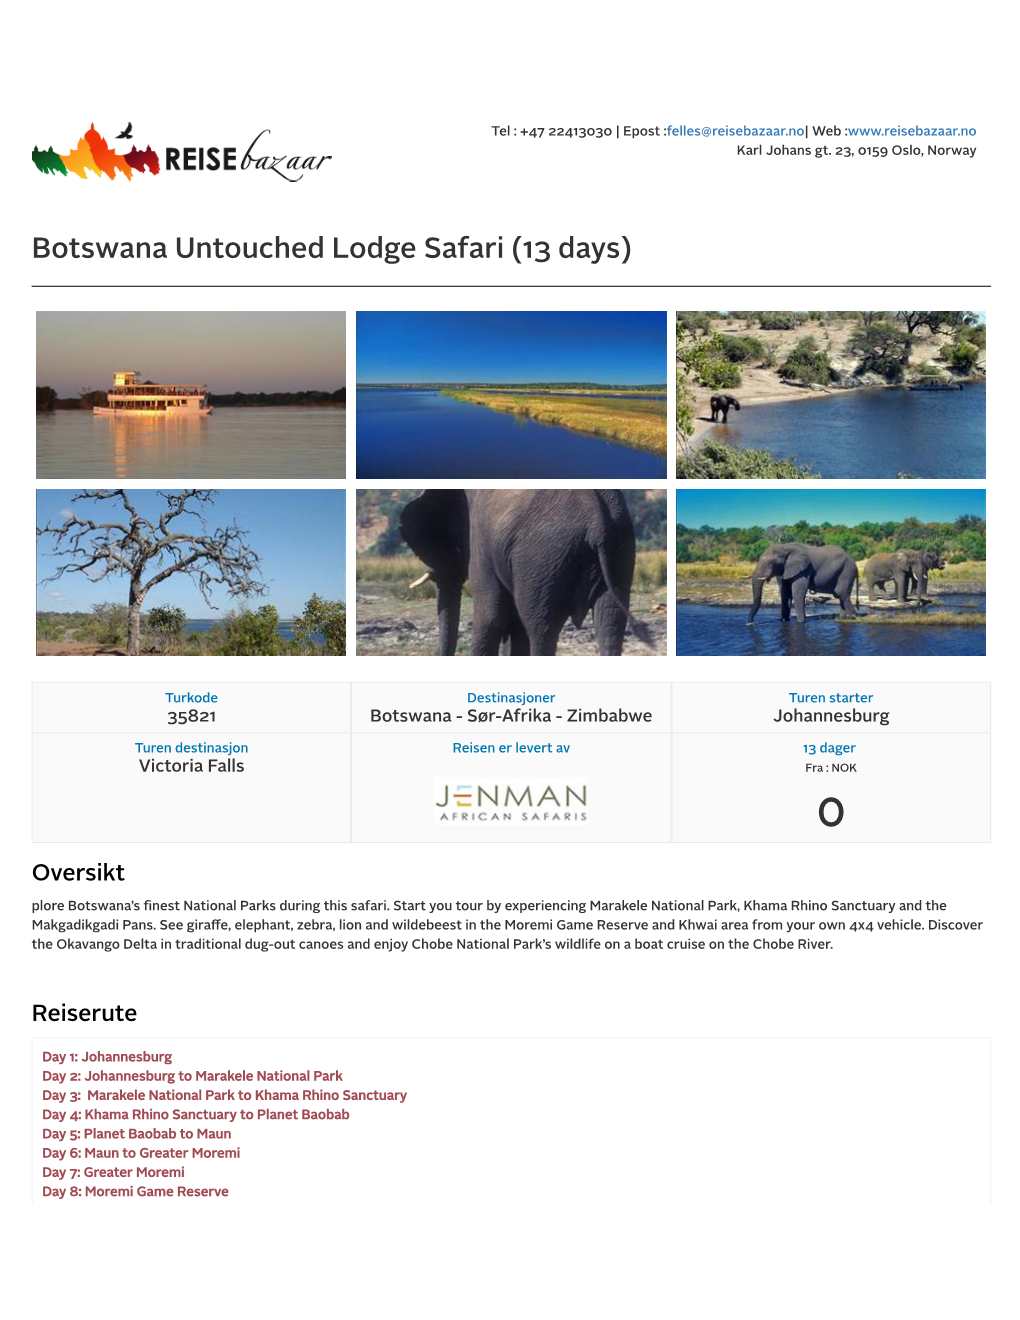 Botswana Untouched Lodge Safari (13 Days)